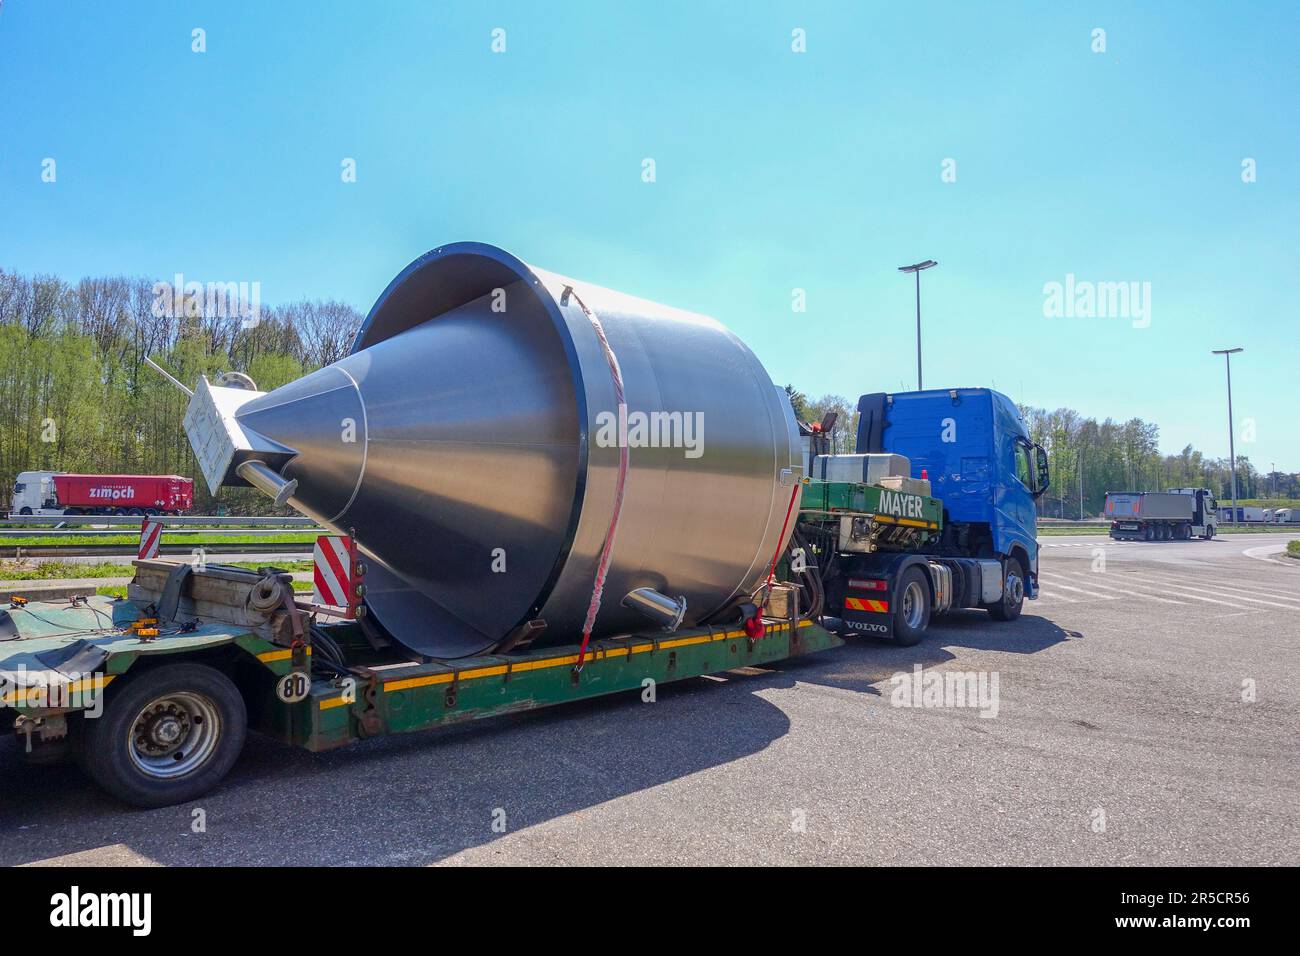 AACHEN, NRW, DEUTSCHLAND - 18. April 2019: Schwertransport eines großen Edelstahlbehälters auf einem Tieflader-Anhänger, Parken an einer Lkw-Haltestelle Stockfoto